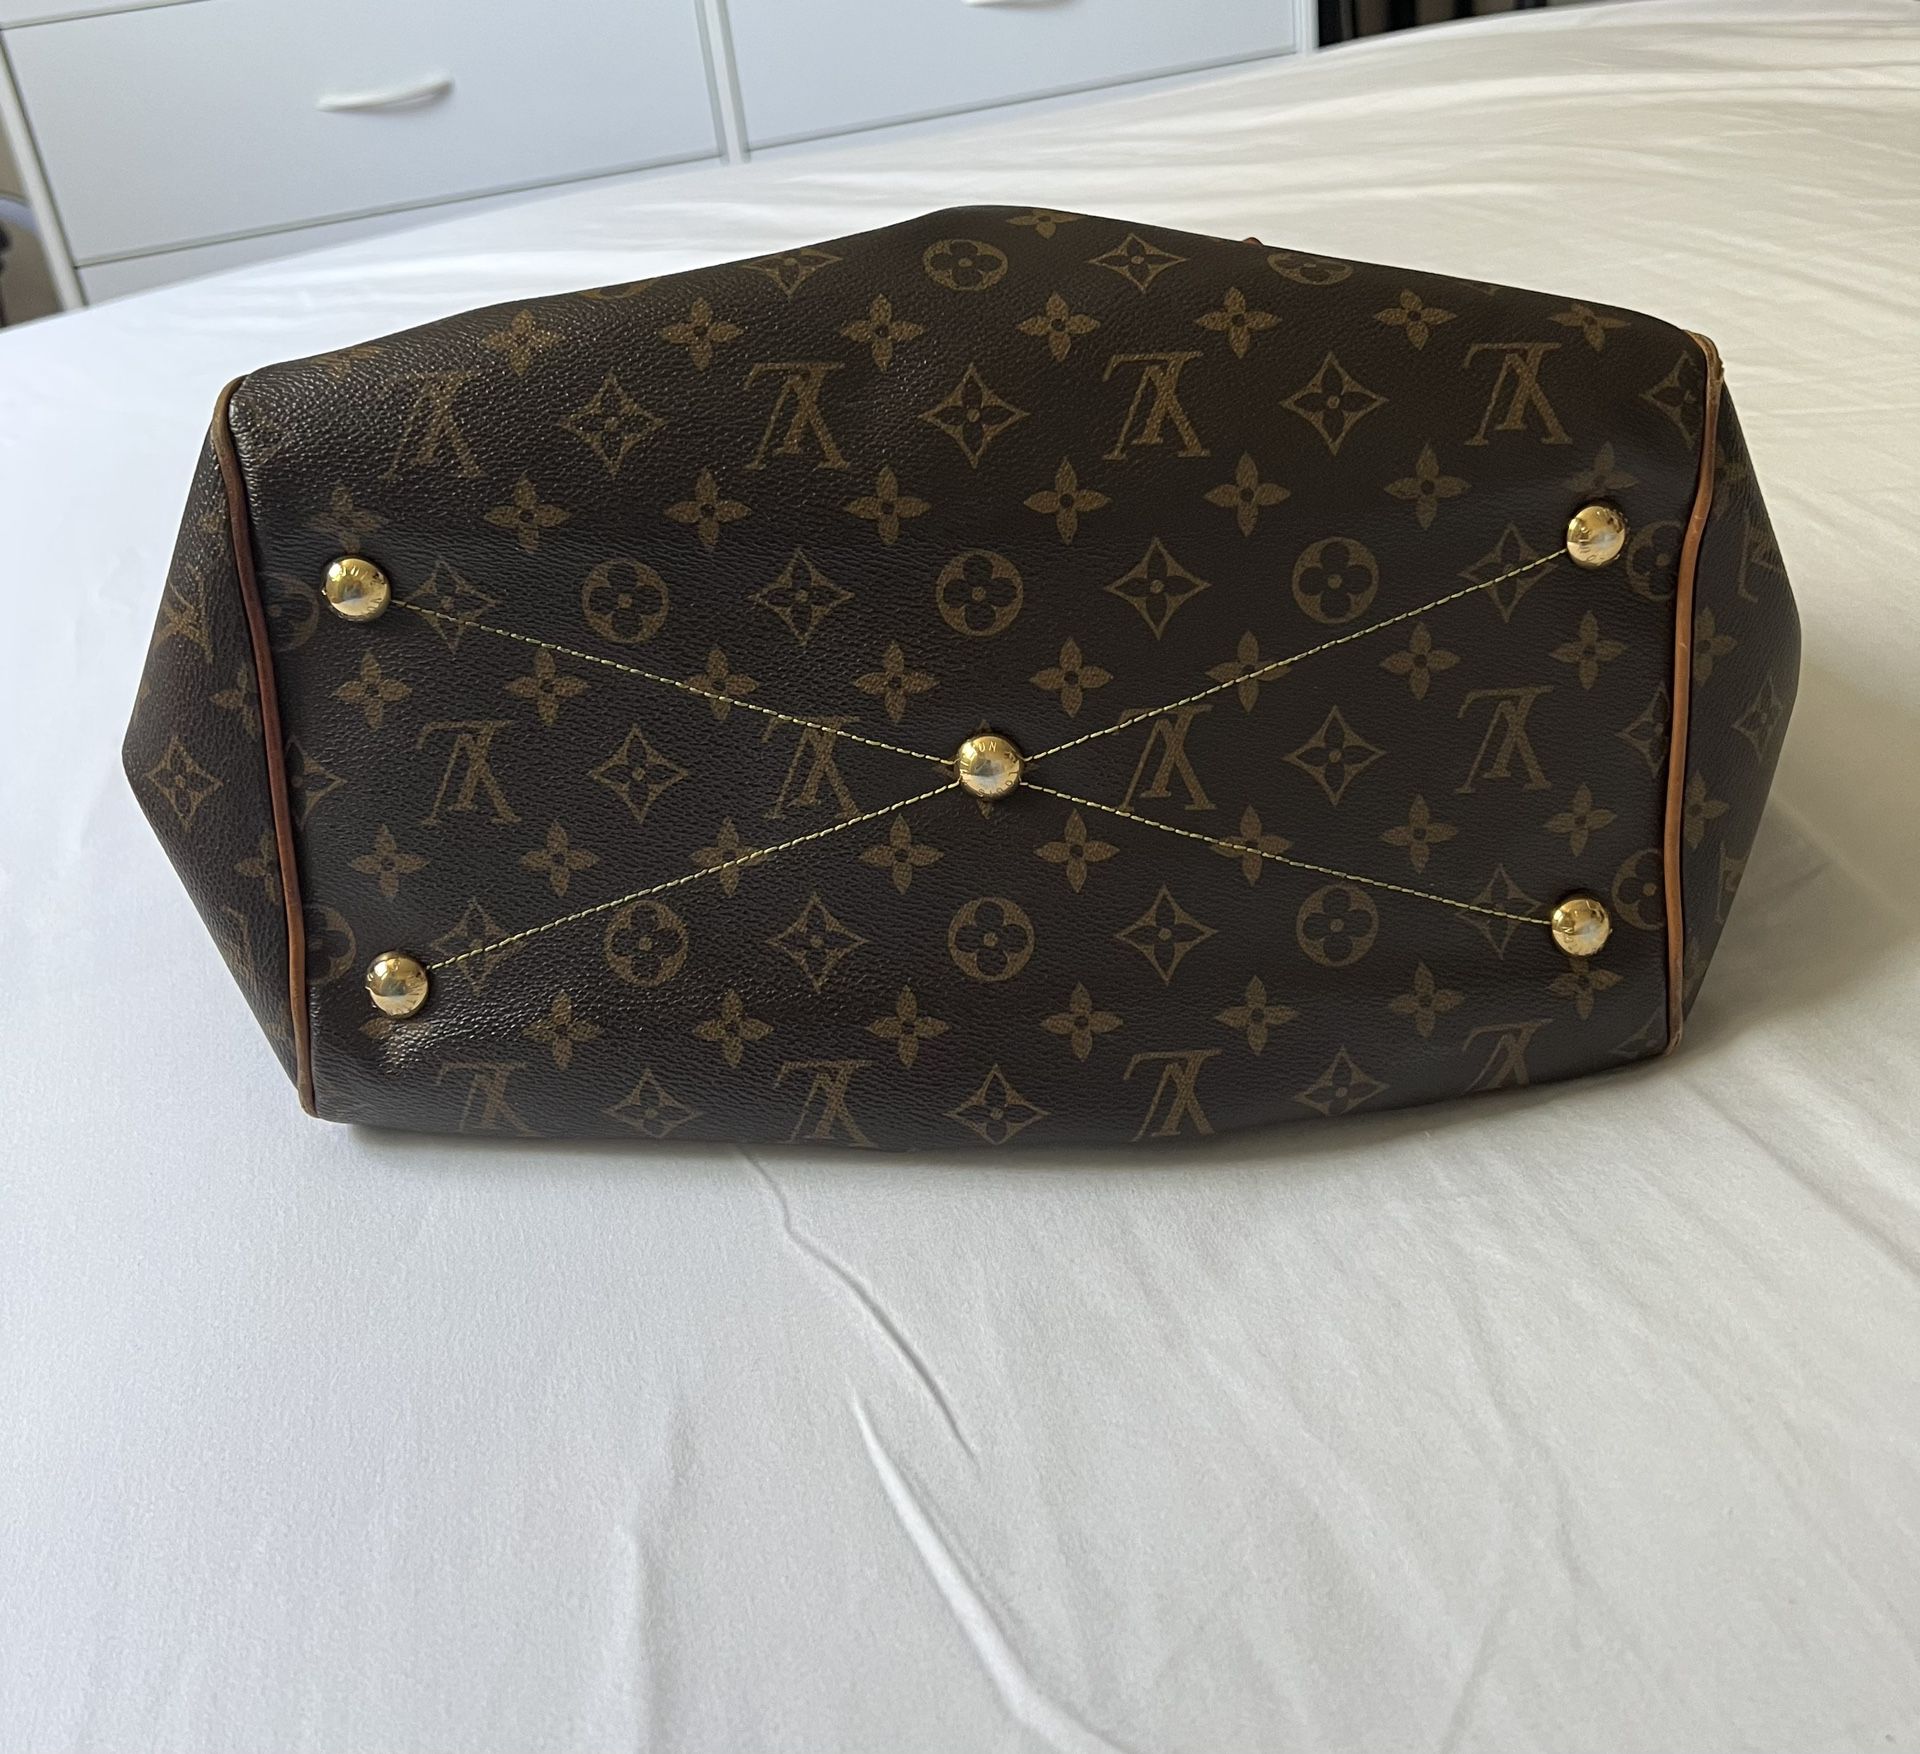 Authentic Louis Vuitton Tivoli PM Monogram Satchel Bag